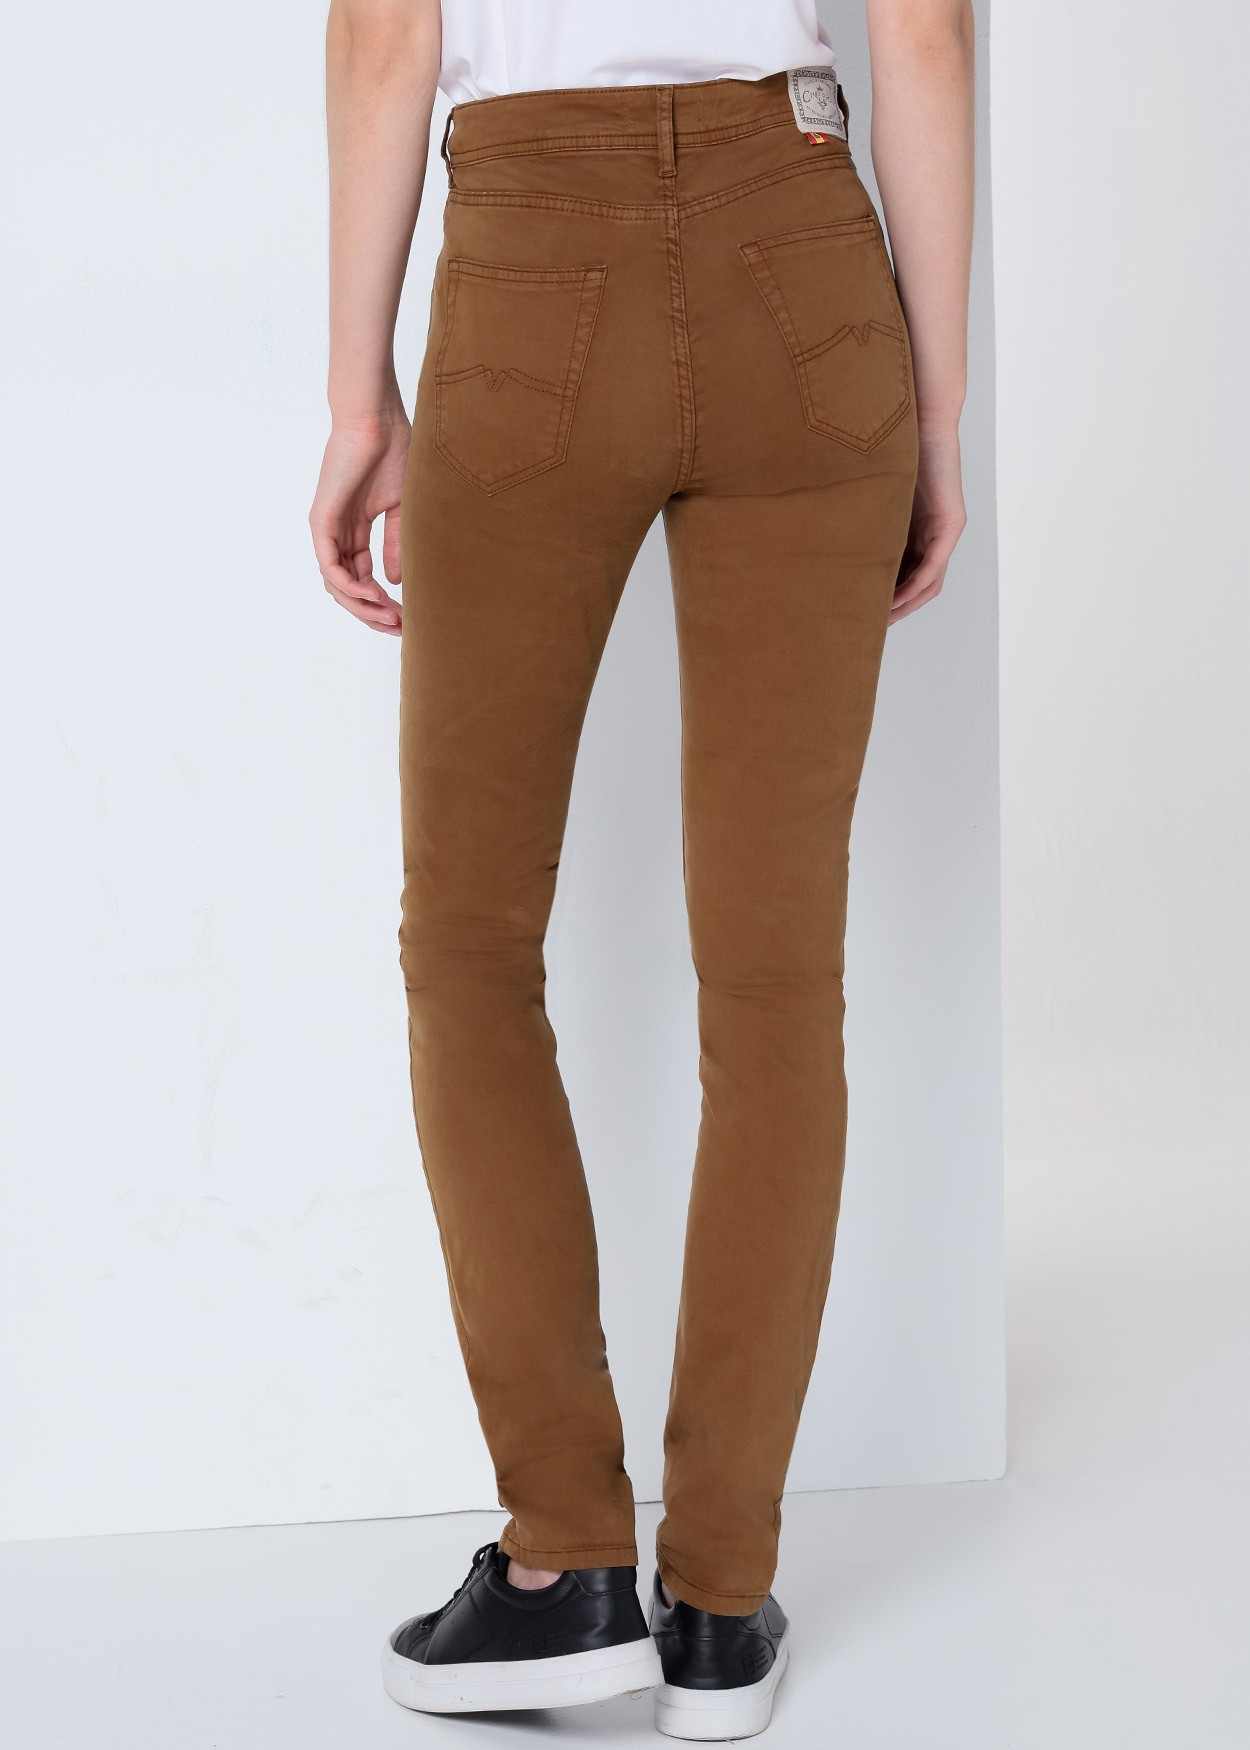 NOUFLORE HELOISE - Pantalon Couleur | Slim Fit- Taille Moyenne  | Taille en pouces Cimarron